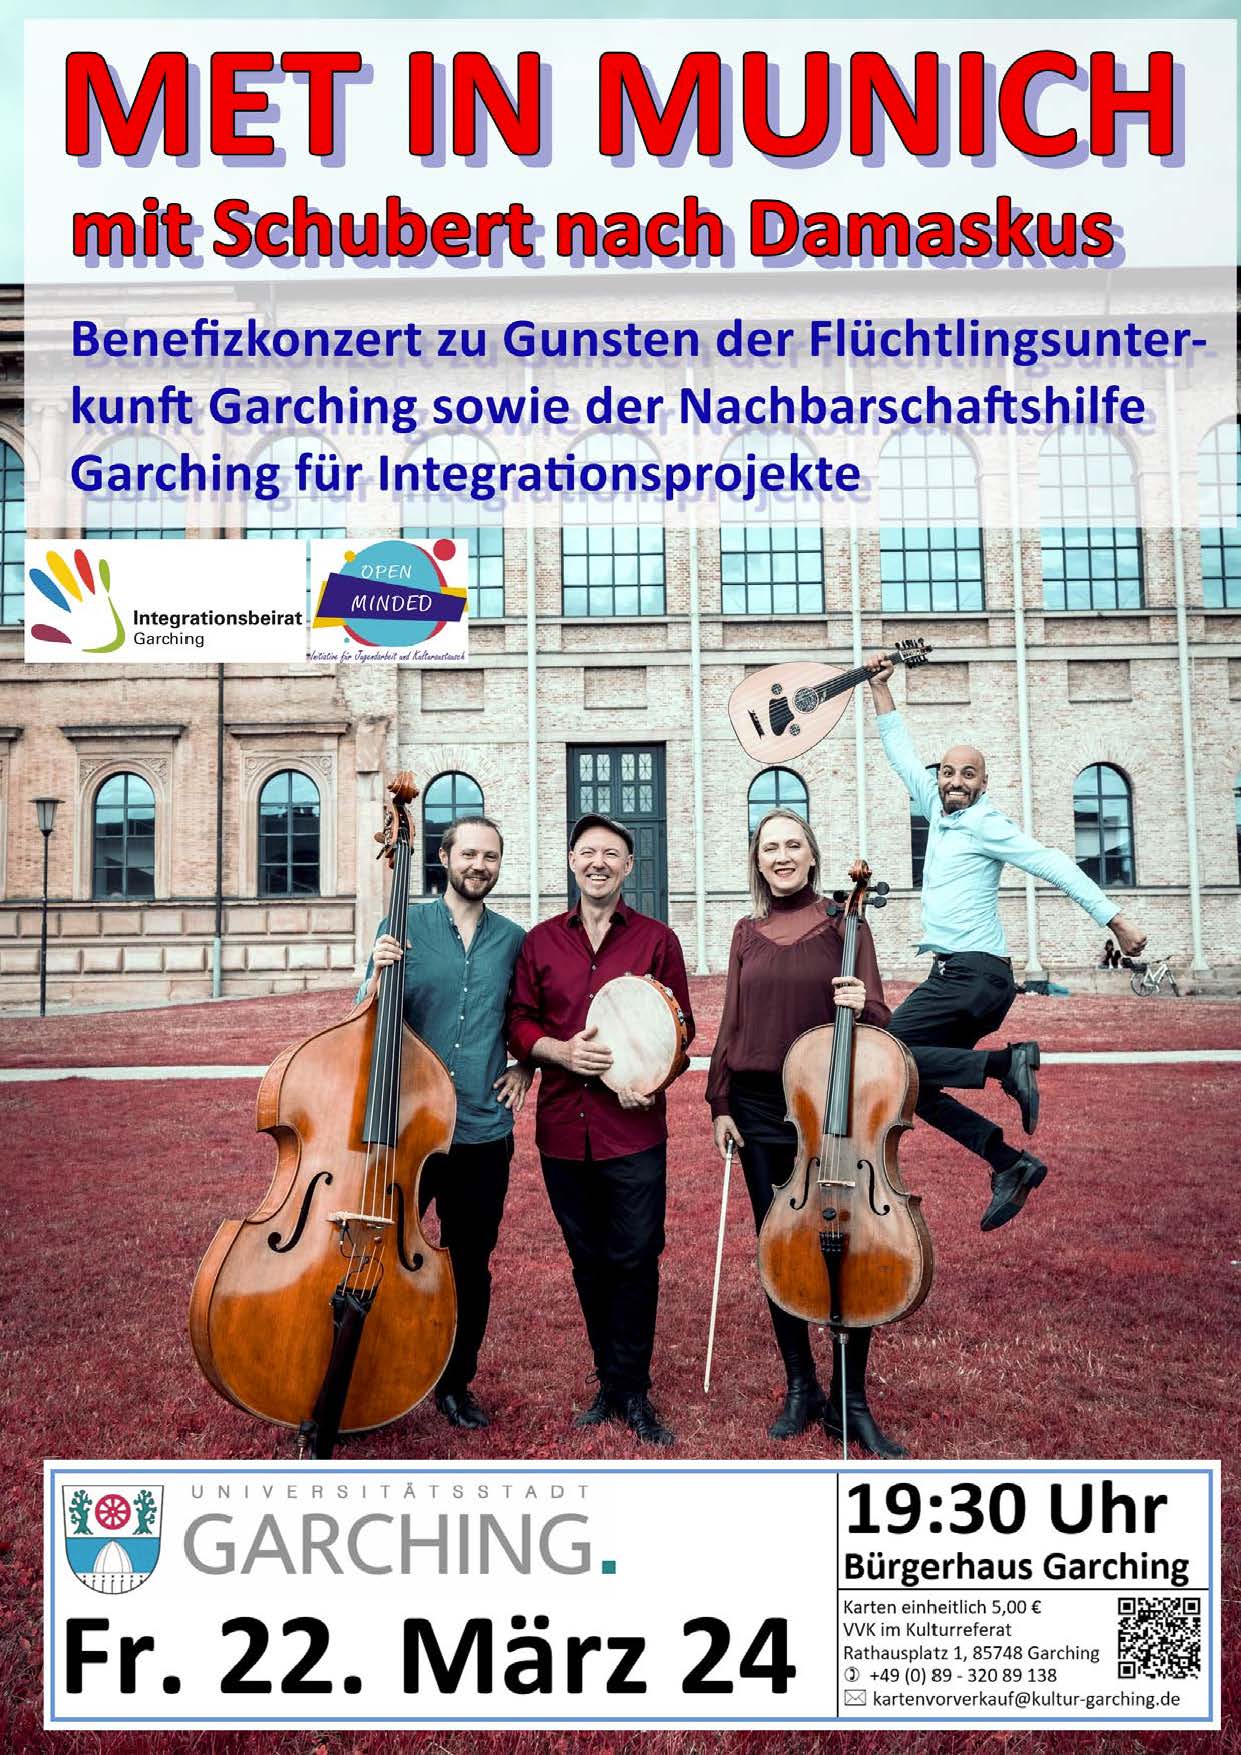 Das Plakat zeigt das Quartett MET in Munich